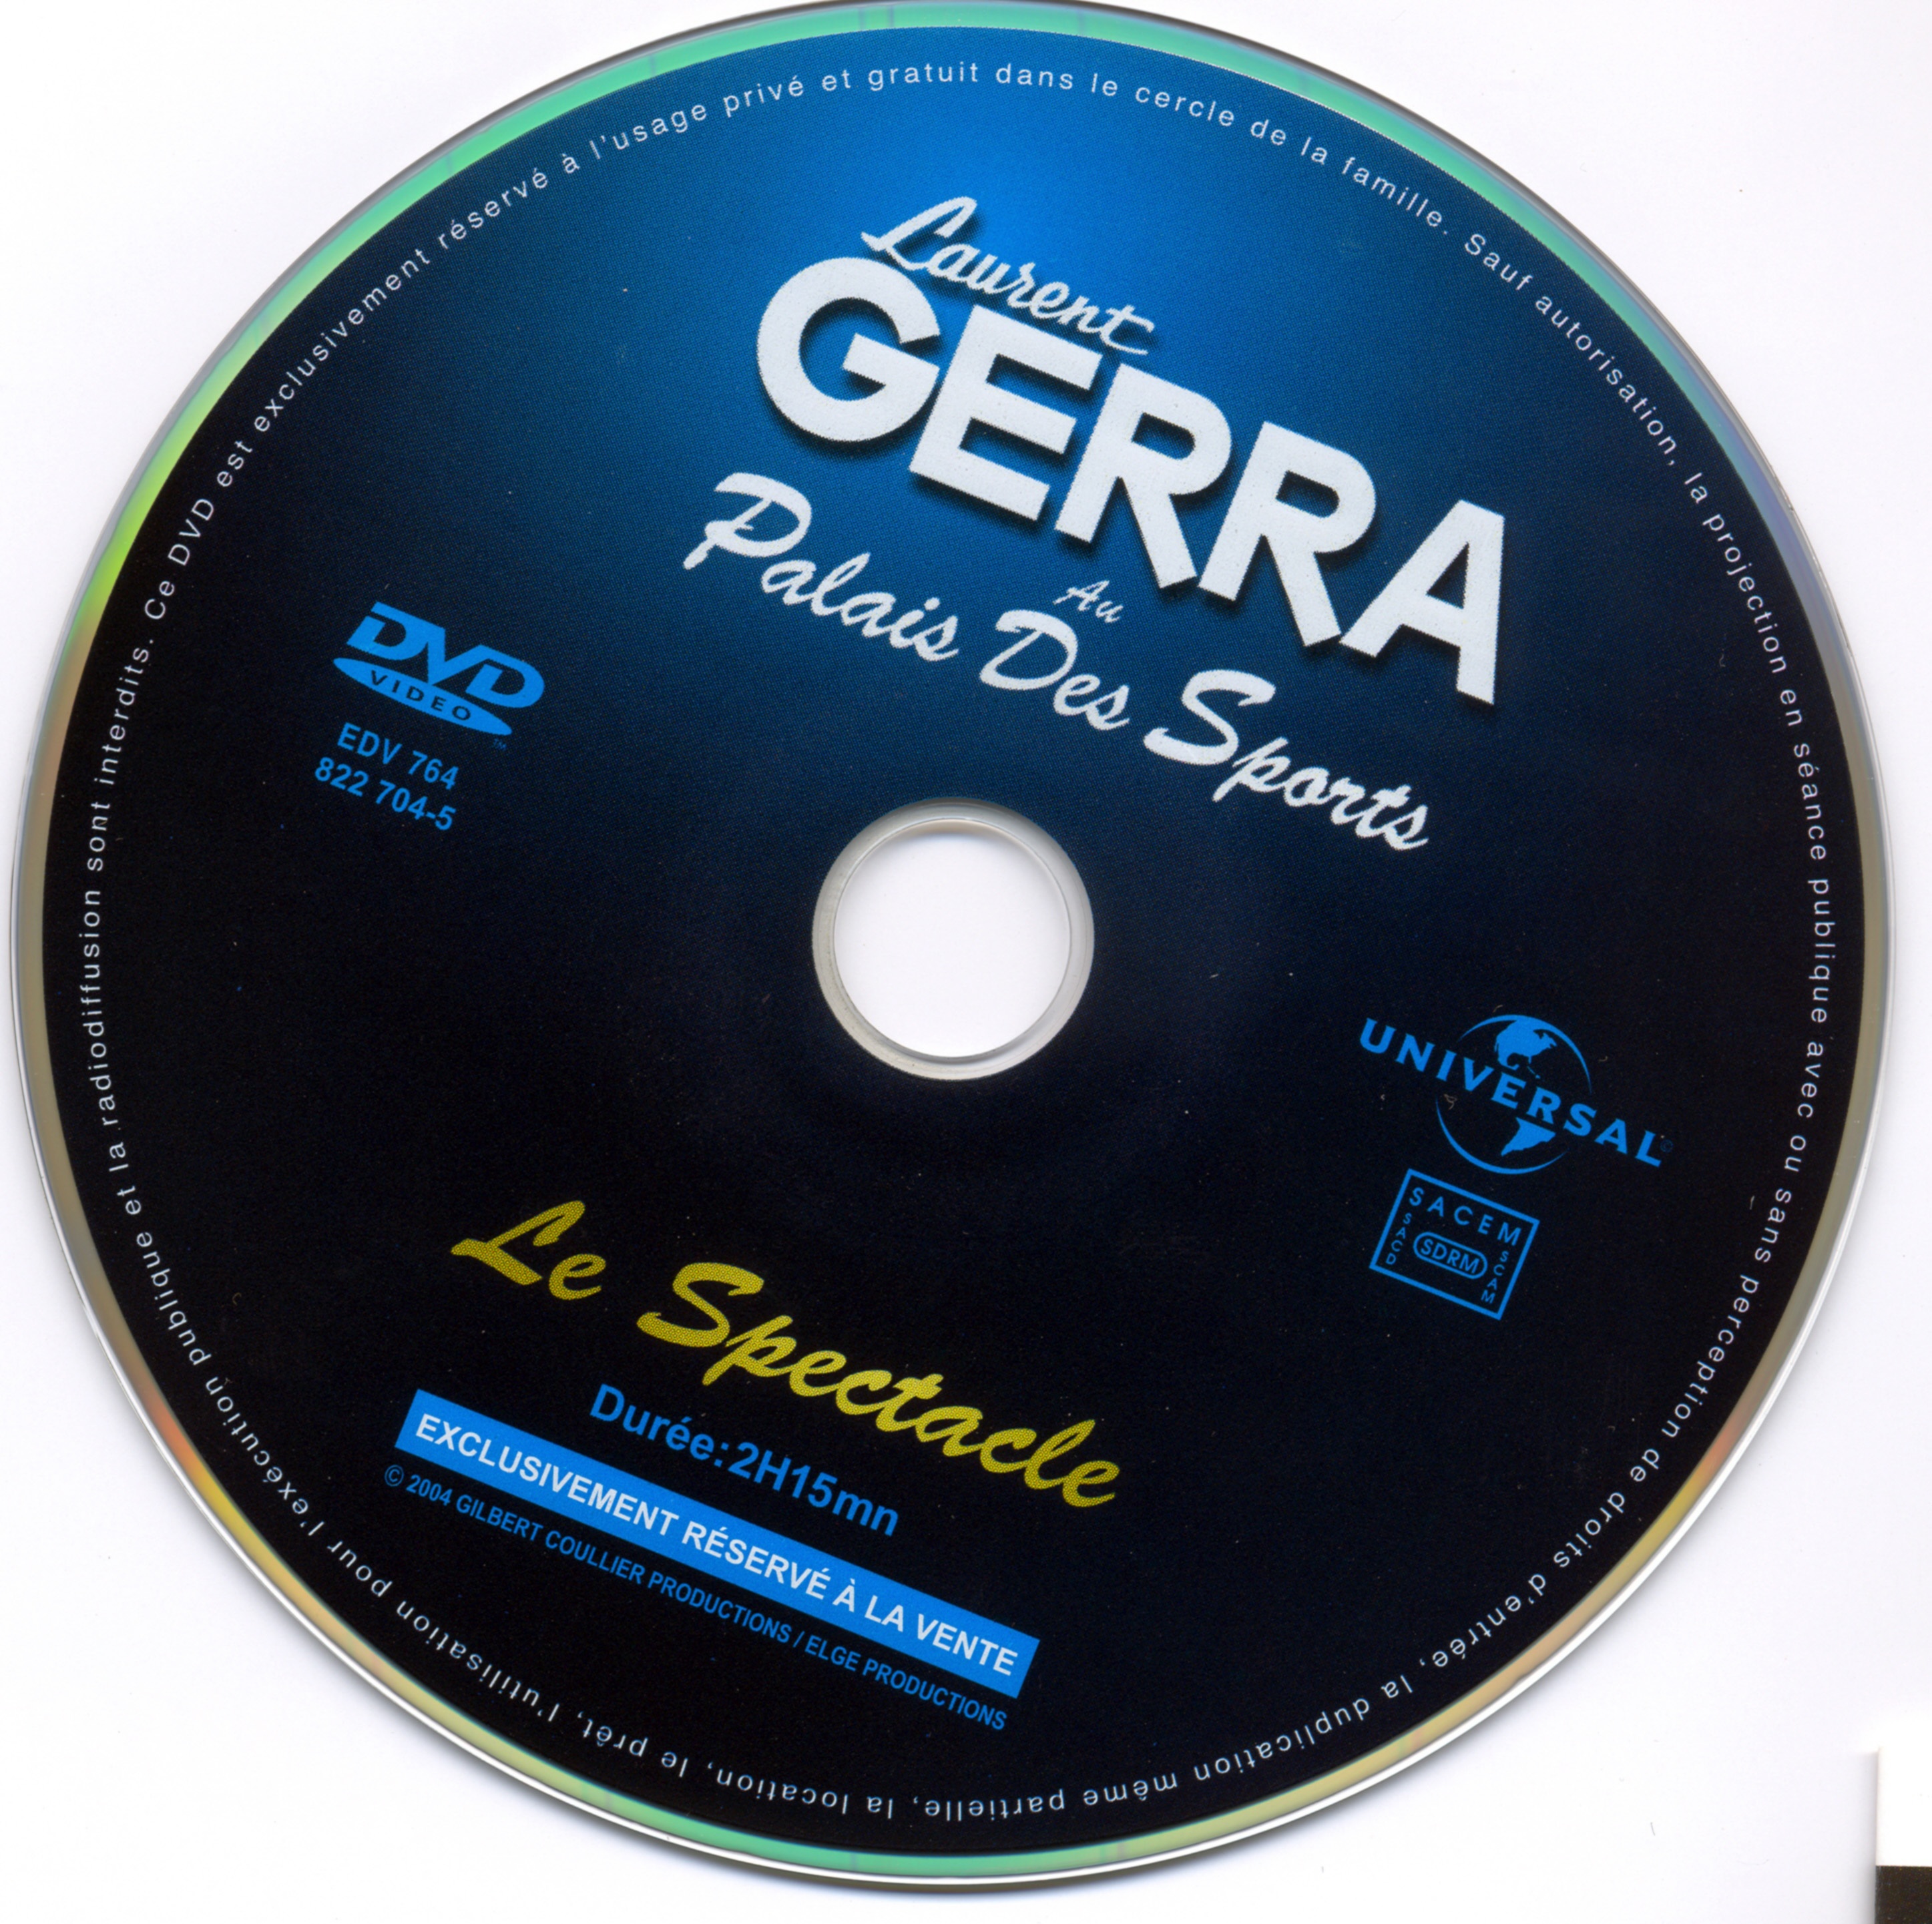 Laurent Gerra palais des sports DISC 1